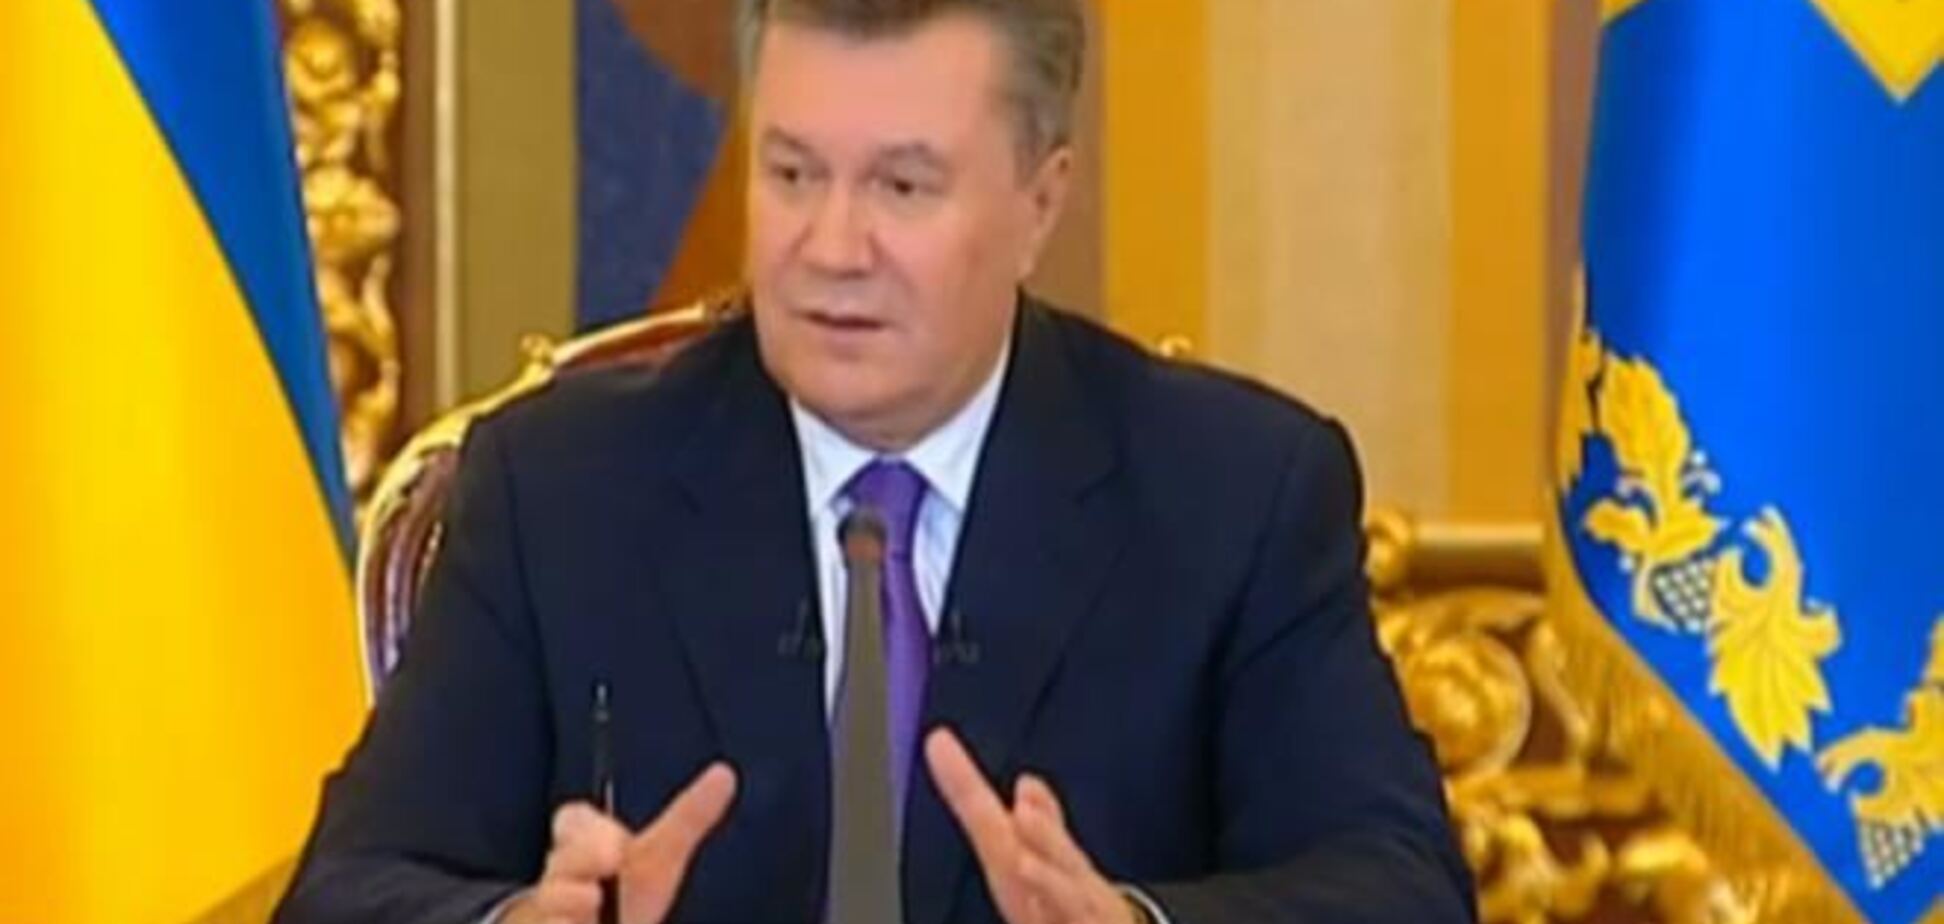 Путин и Янукович дали пресс-конференцию в одно и то же время, чтобы снять все вопросы - эксперт 